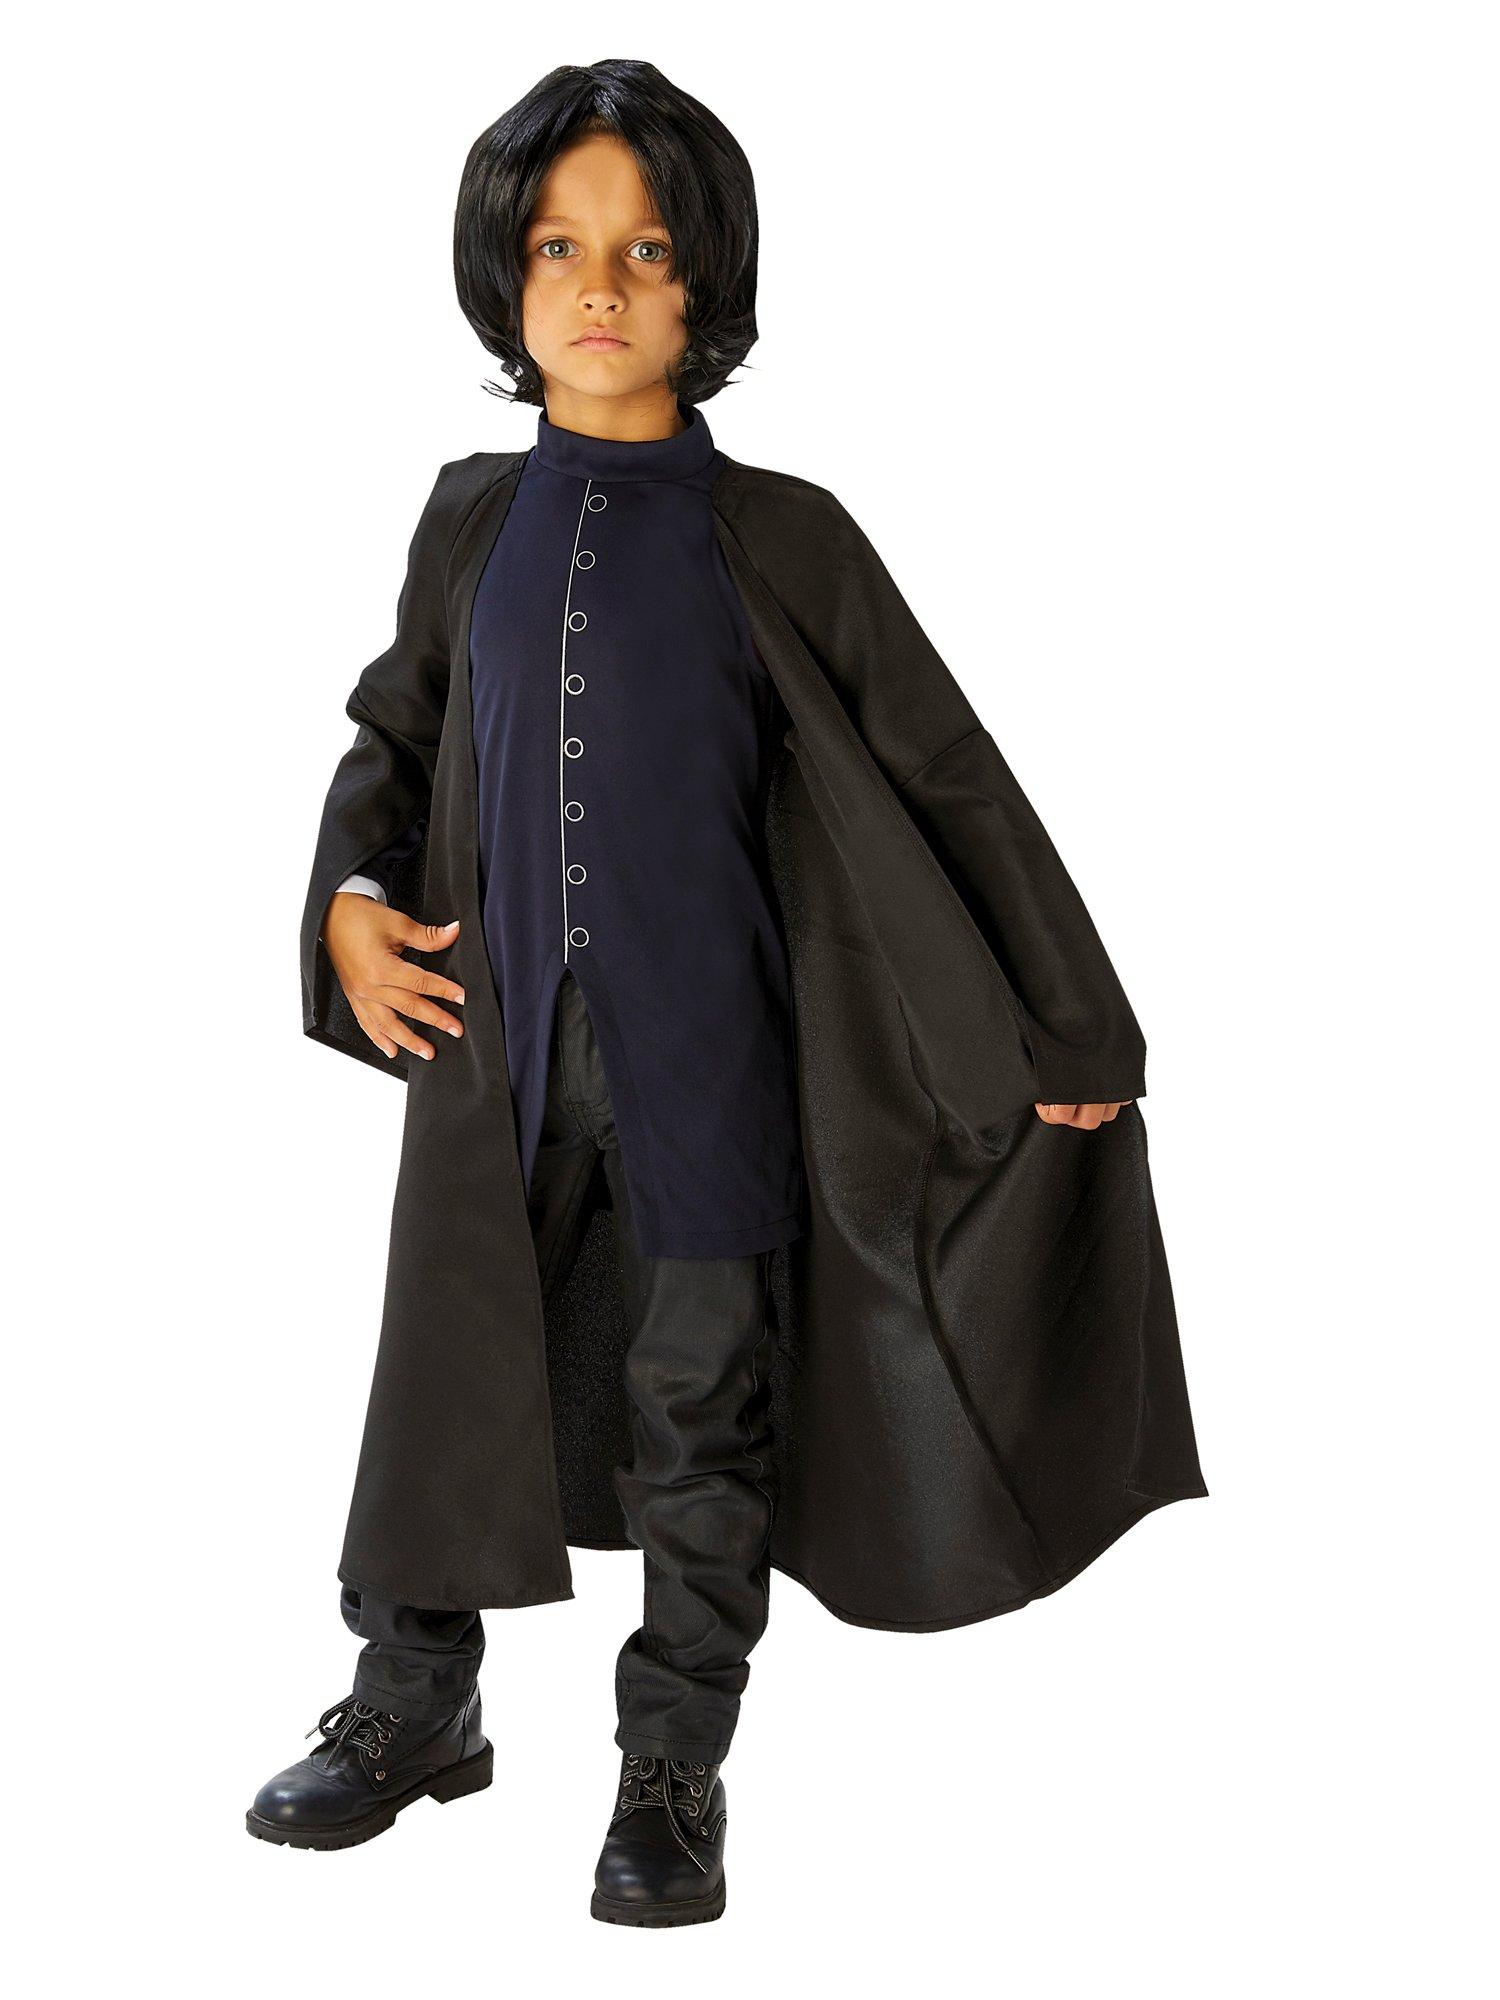 Kids Snape Costume